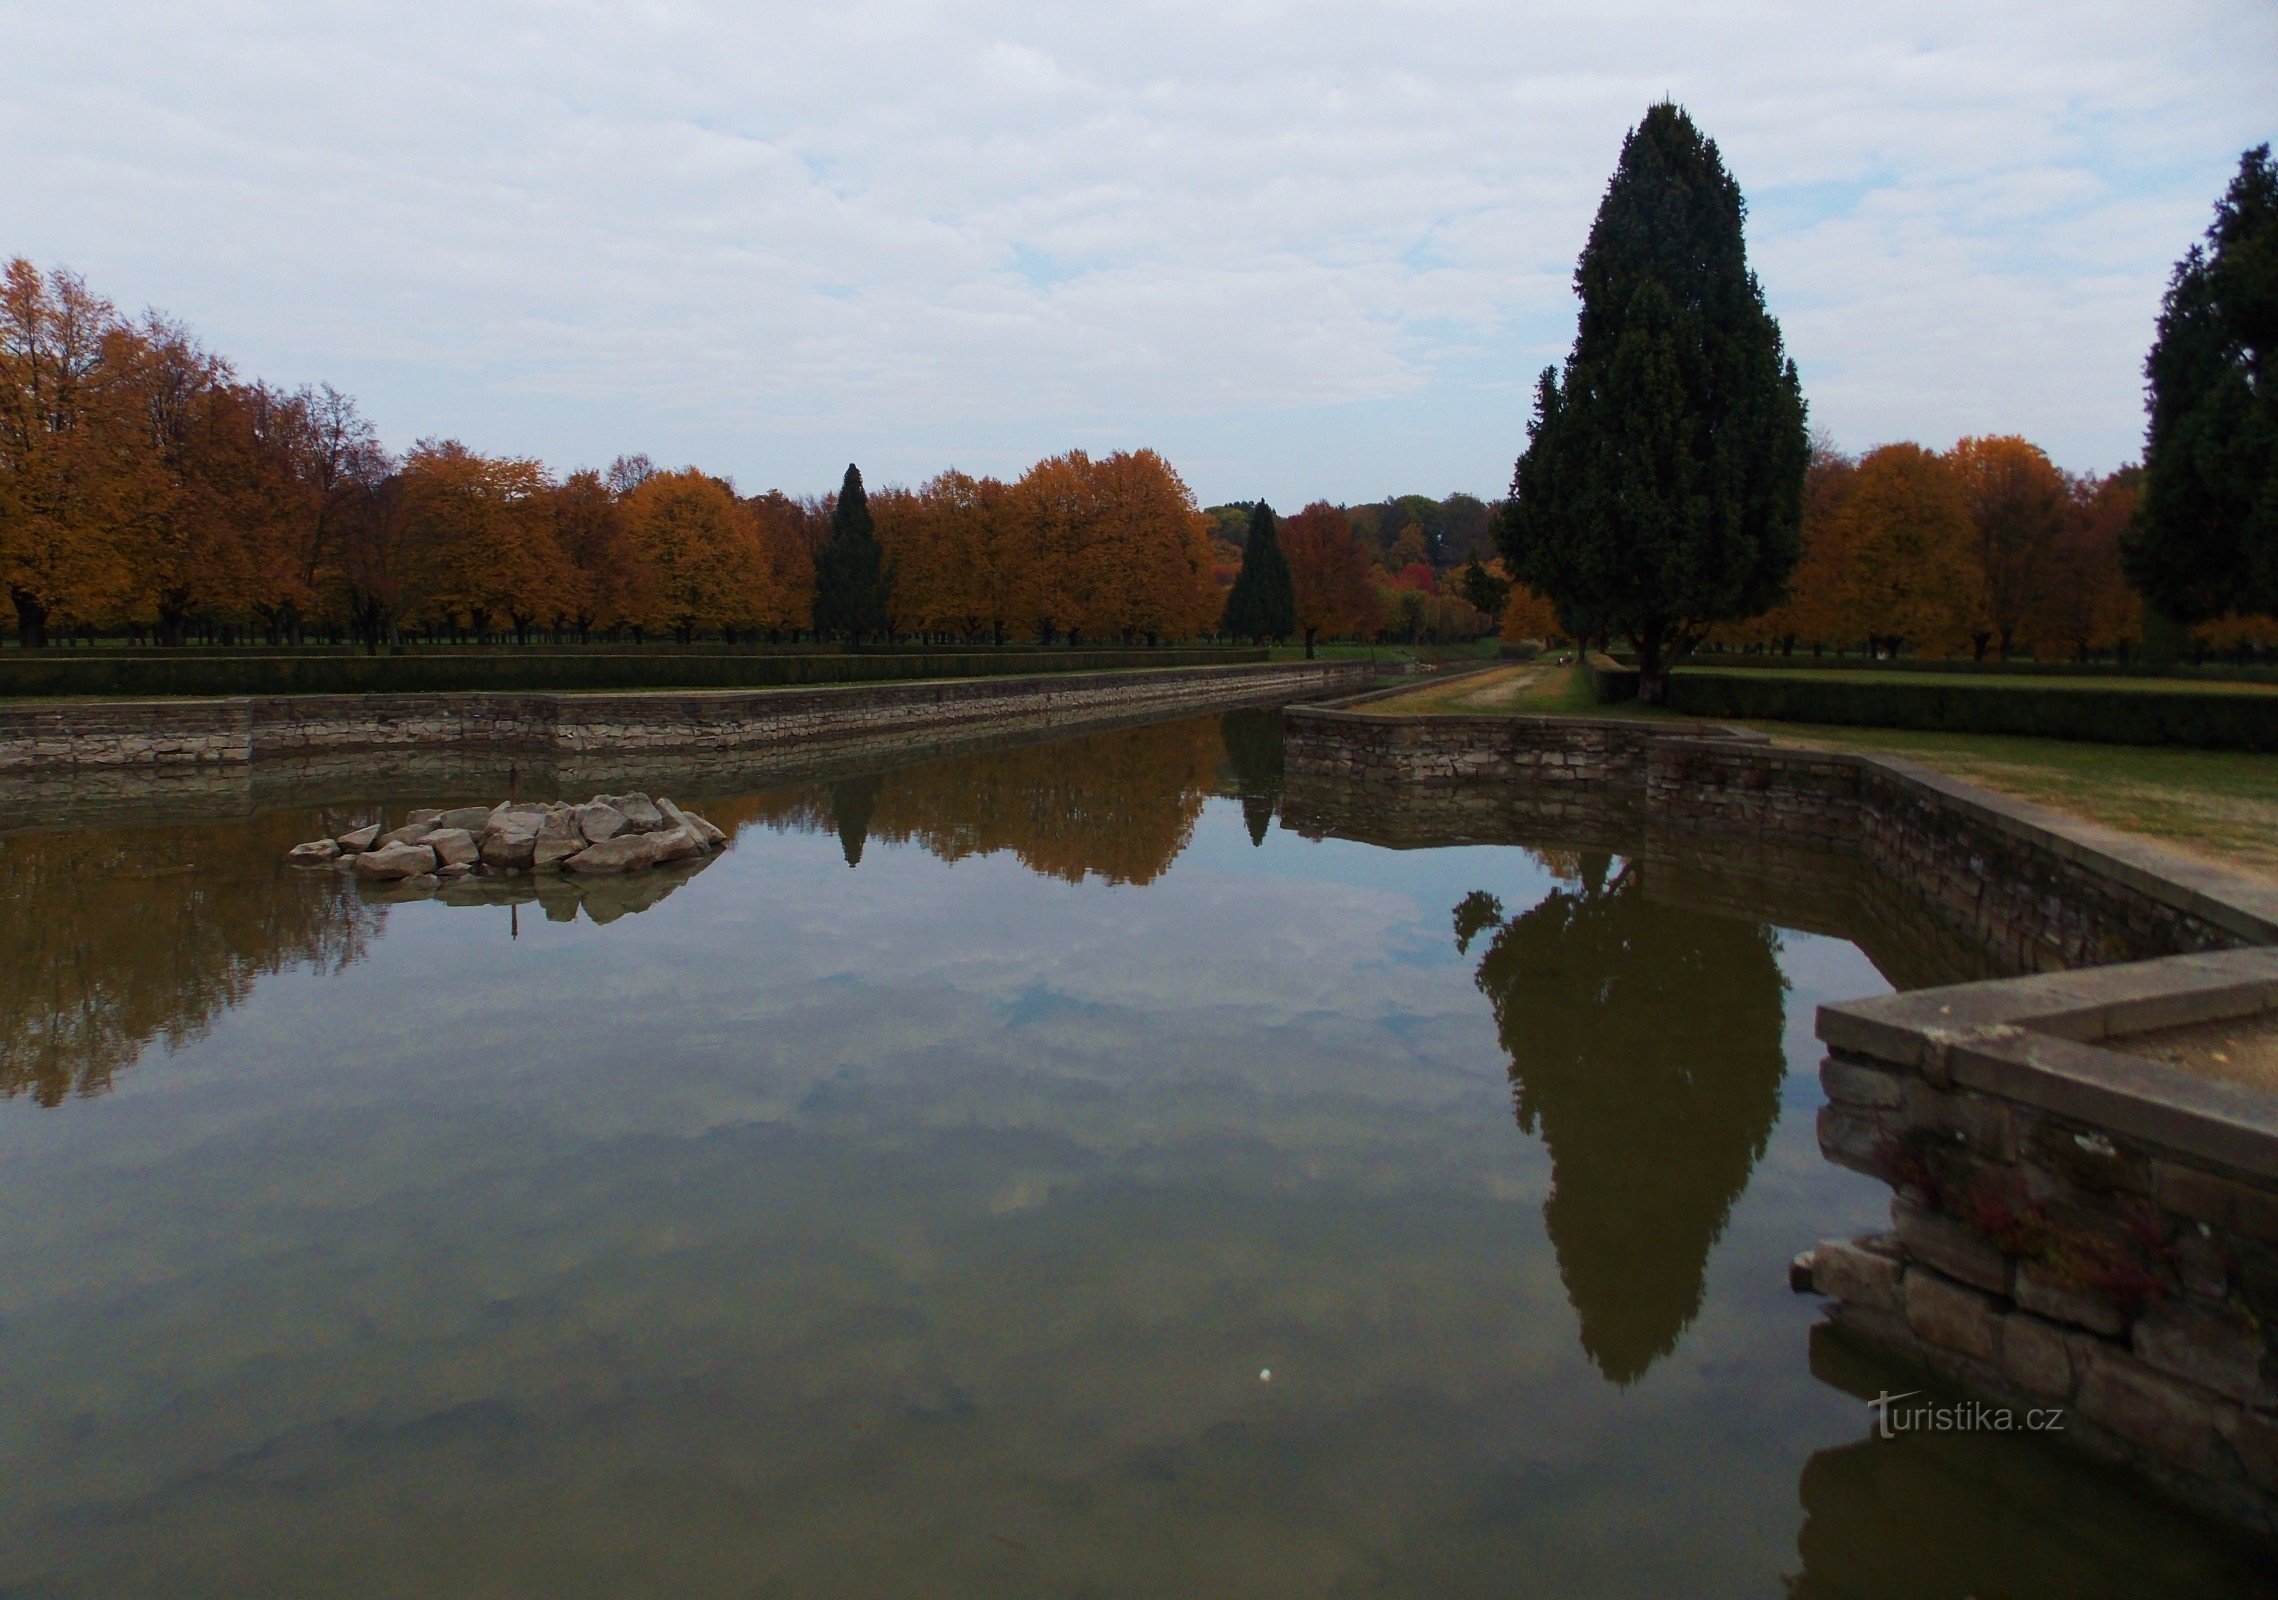 A superfície refletora dos canais de água no parque do castelo Holešov